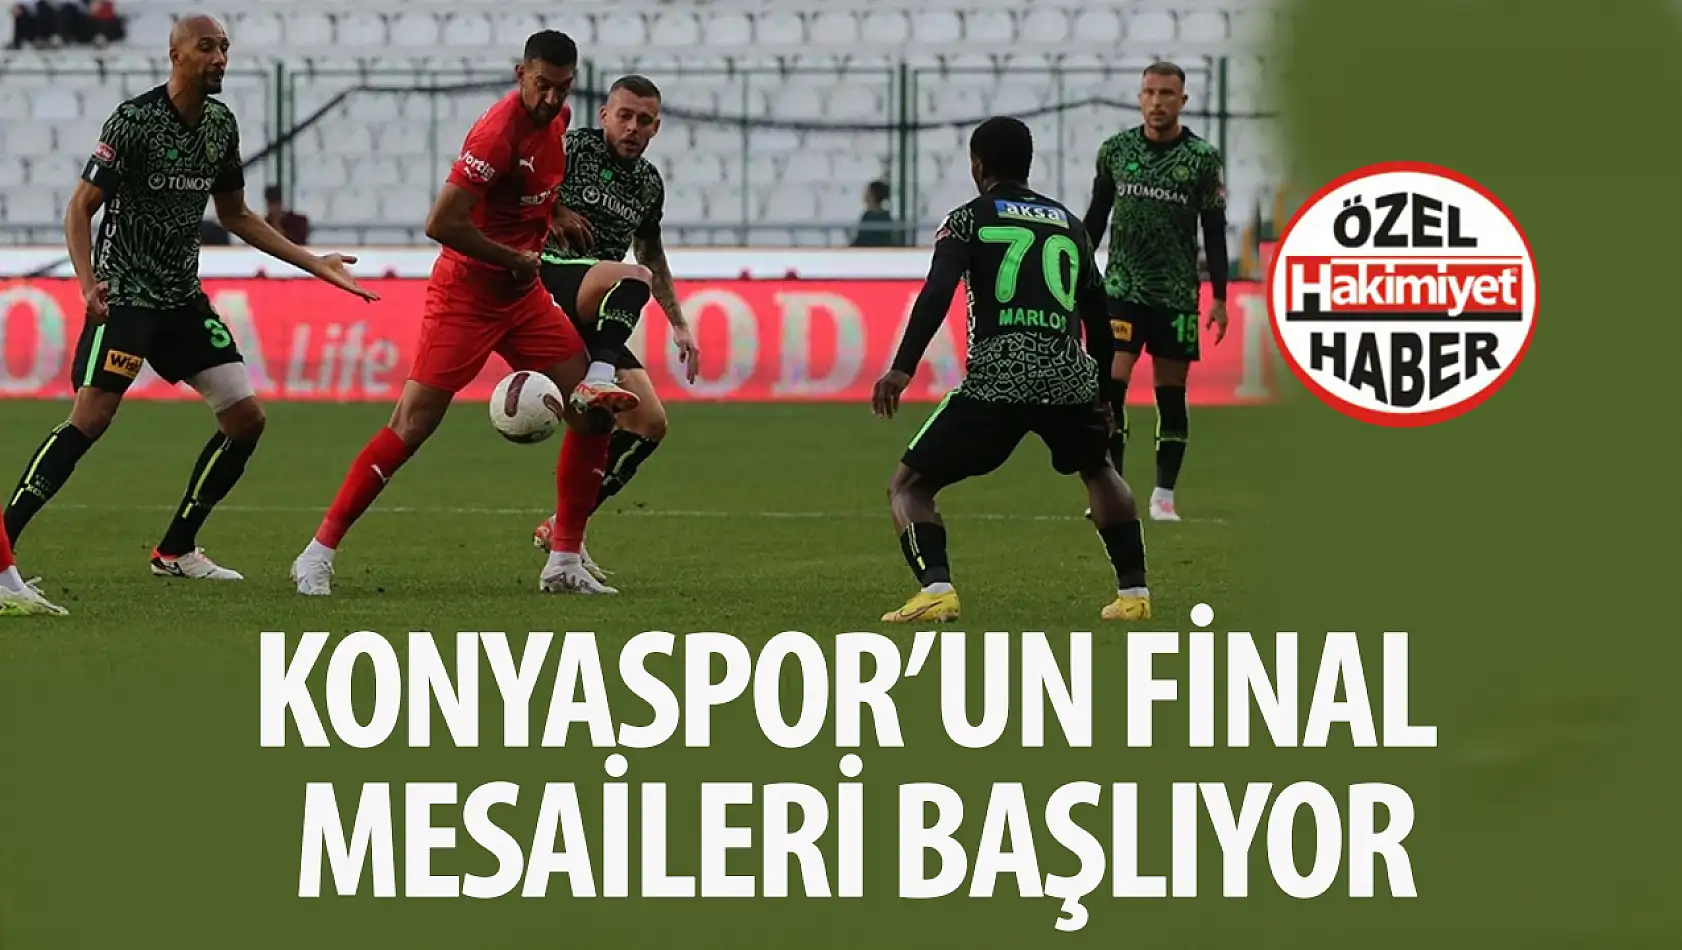 Konyaspor'un final mesaileri başlıyor: Bu maç düşme hattını yakından ilgilendiriyor!